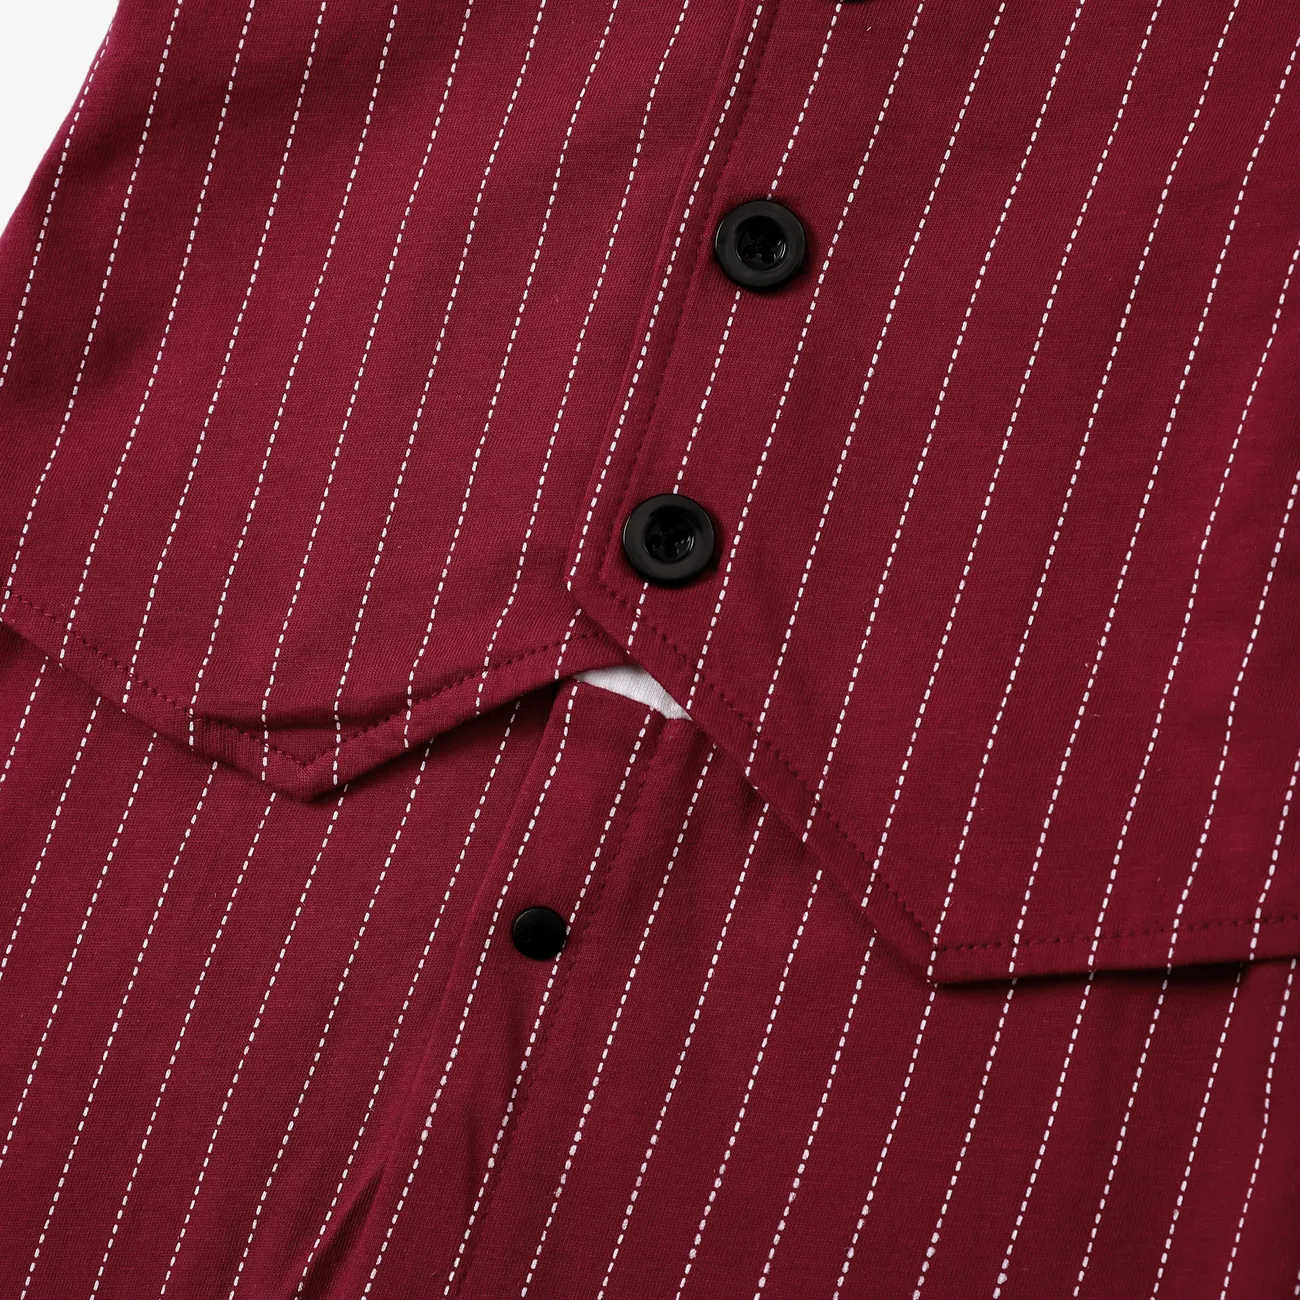 2pcs Baby Boy Cotton Classic Stripe Short Sleeve Lapel Jumpsuit Red big image 1